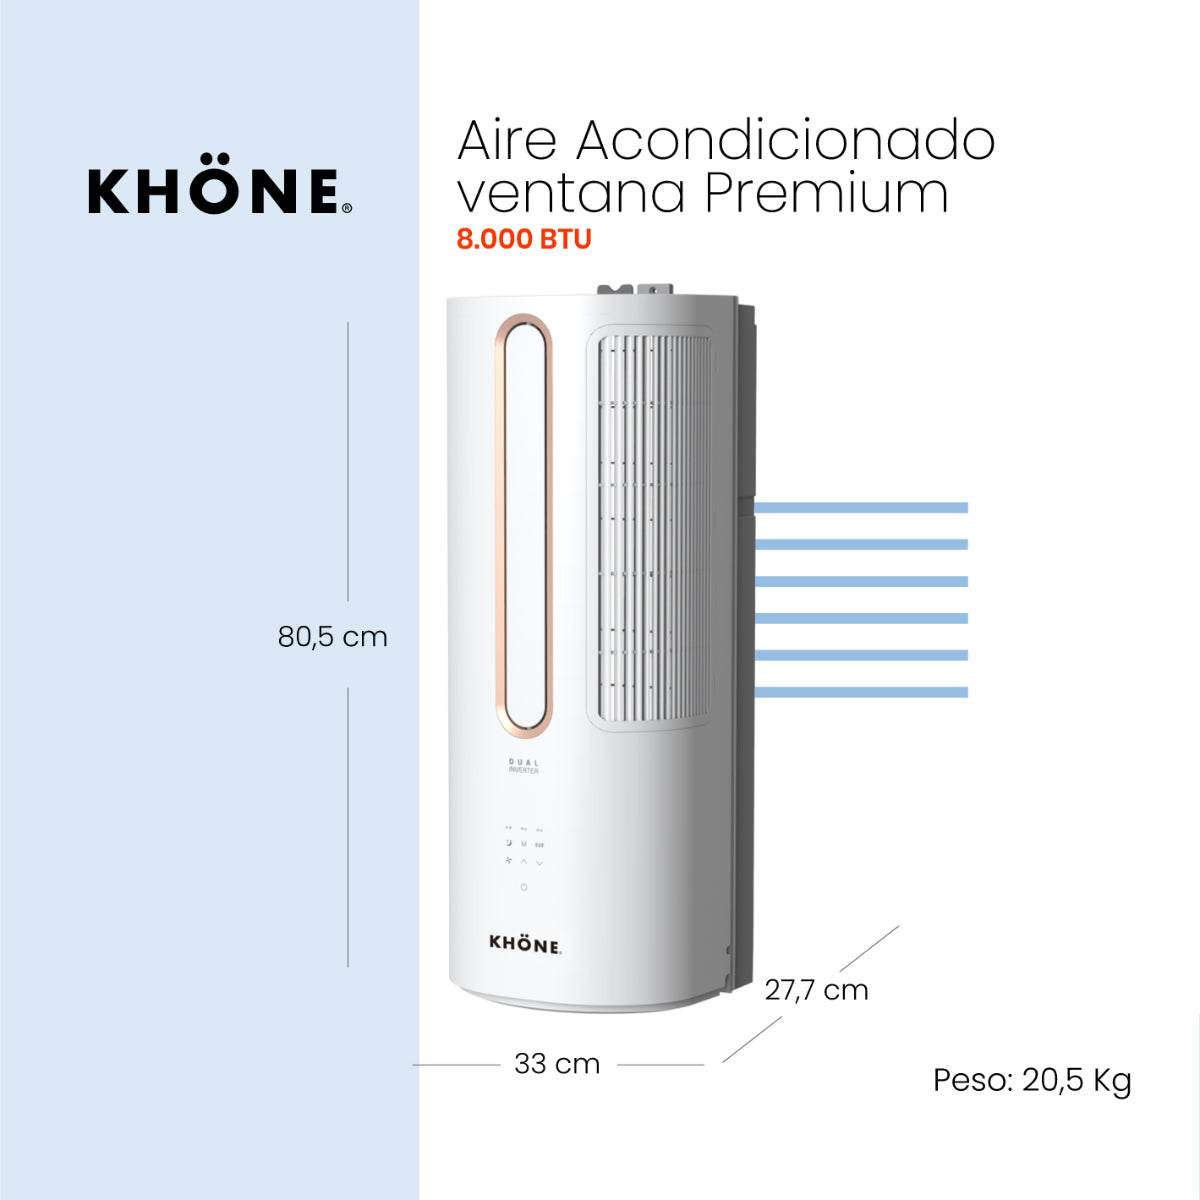 Aire Acondicionado de Ventana Premium Inverter KHÖNE 8.000 BTU/h SOLO FRÍO